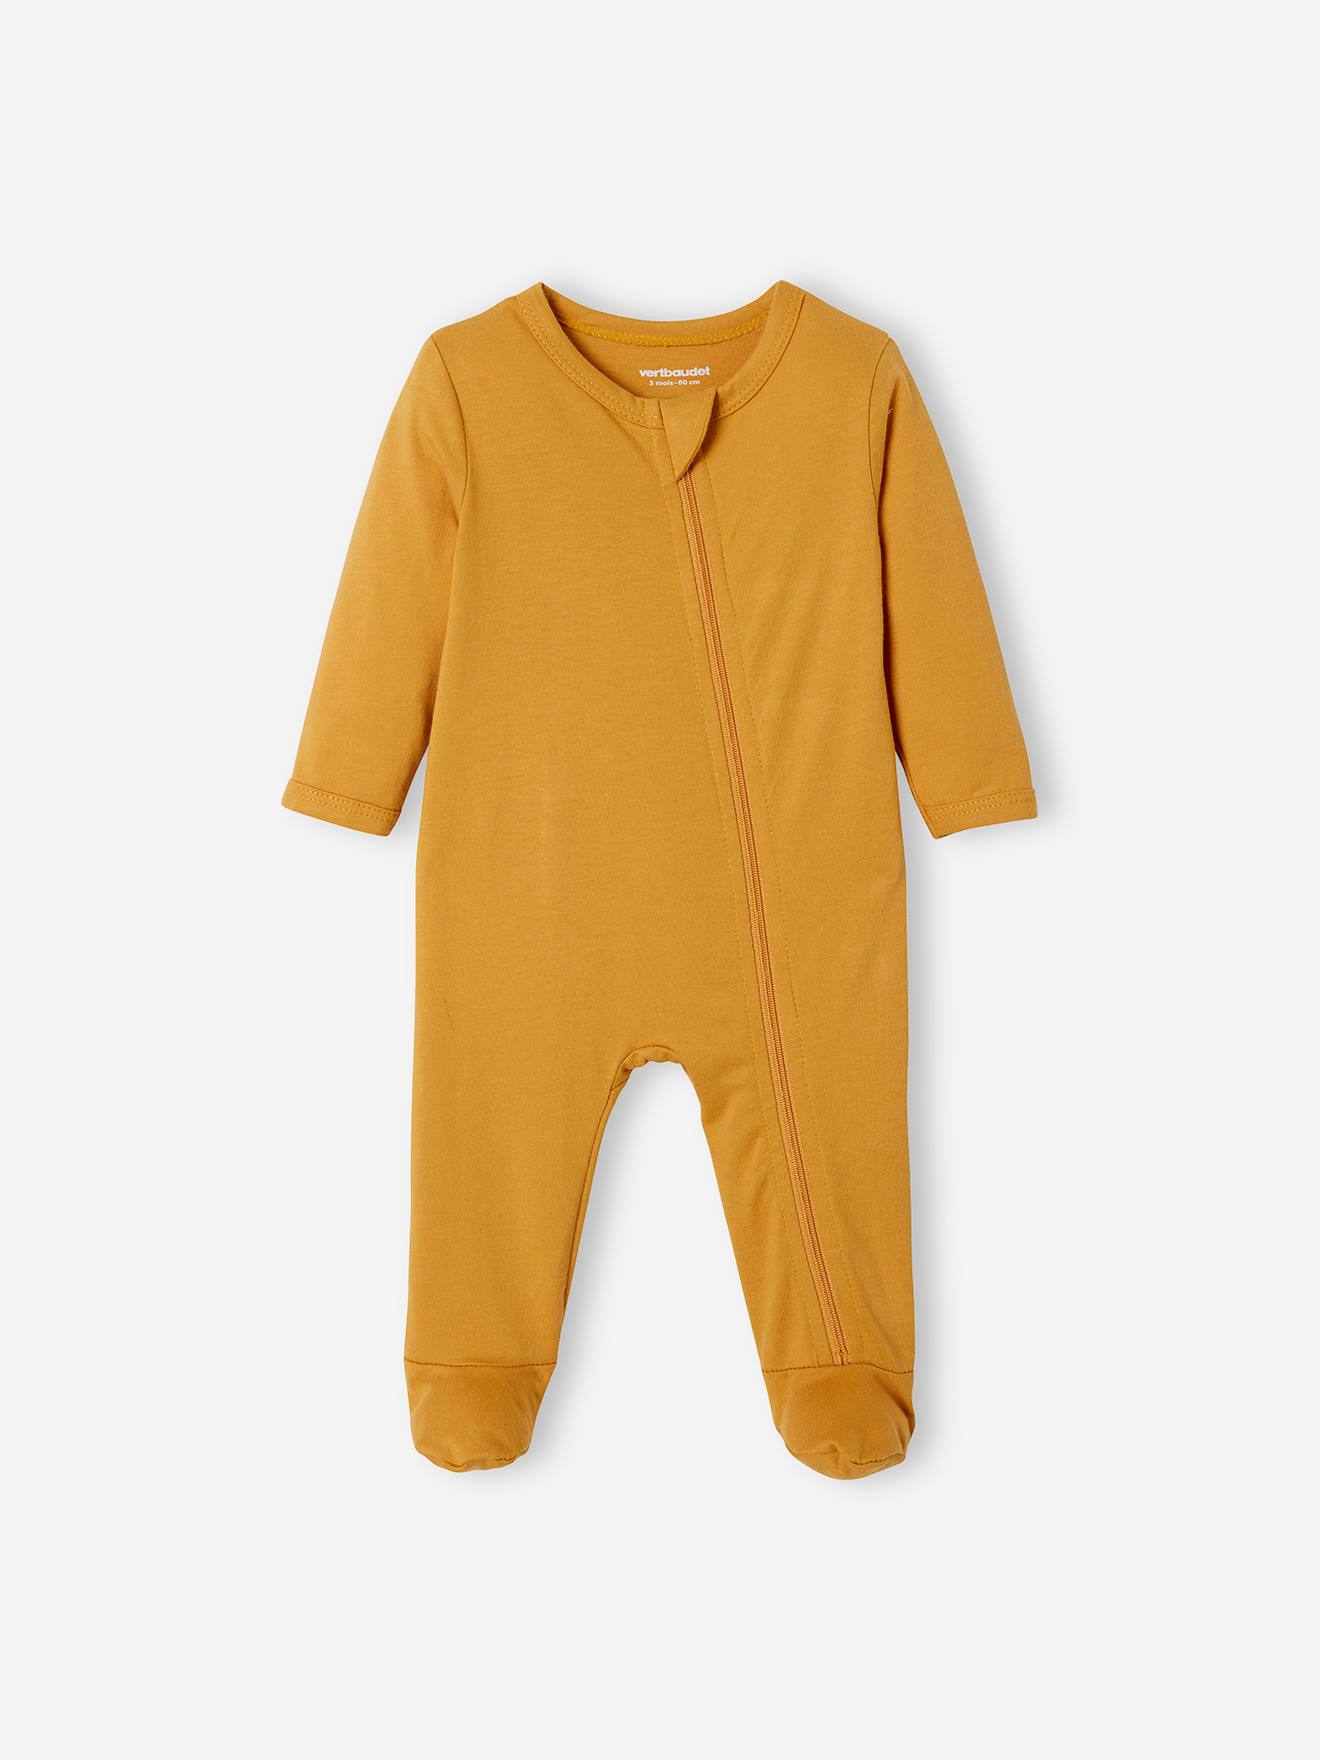 Lot de 3 pyjamas bébé en jersey ouverture zippée BASICS lot ivoire -  Vertbaudet